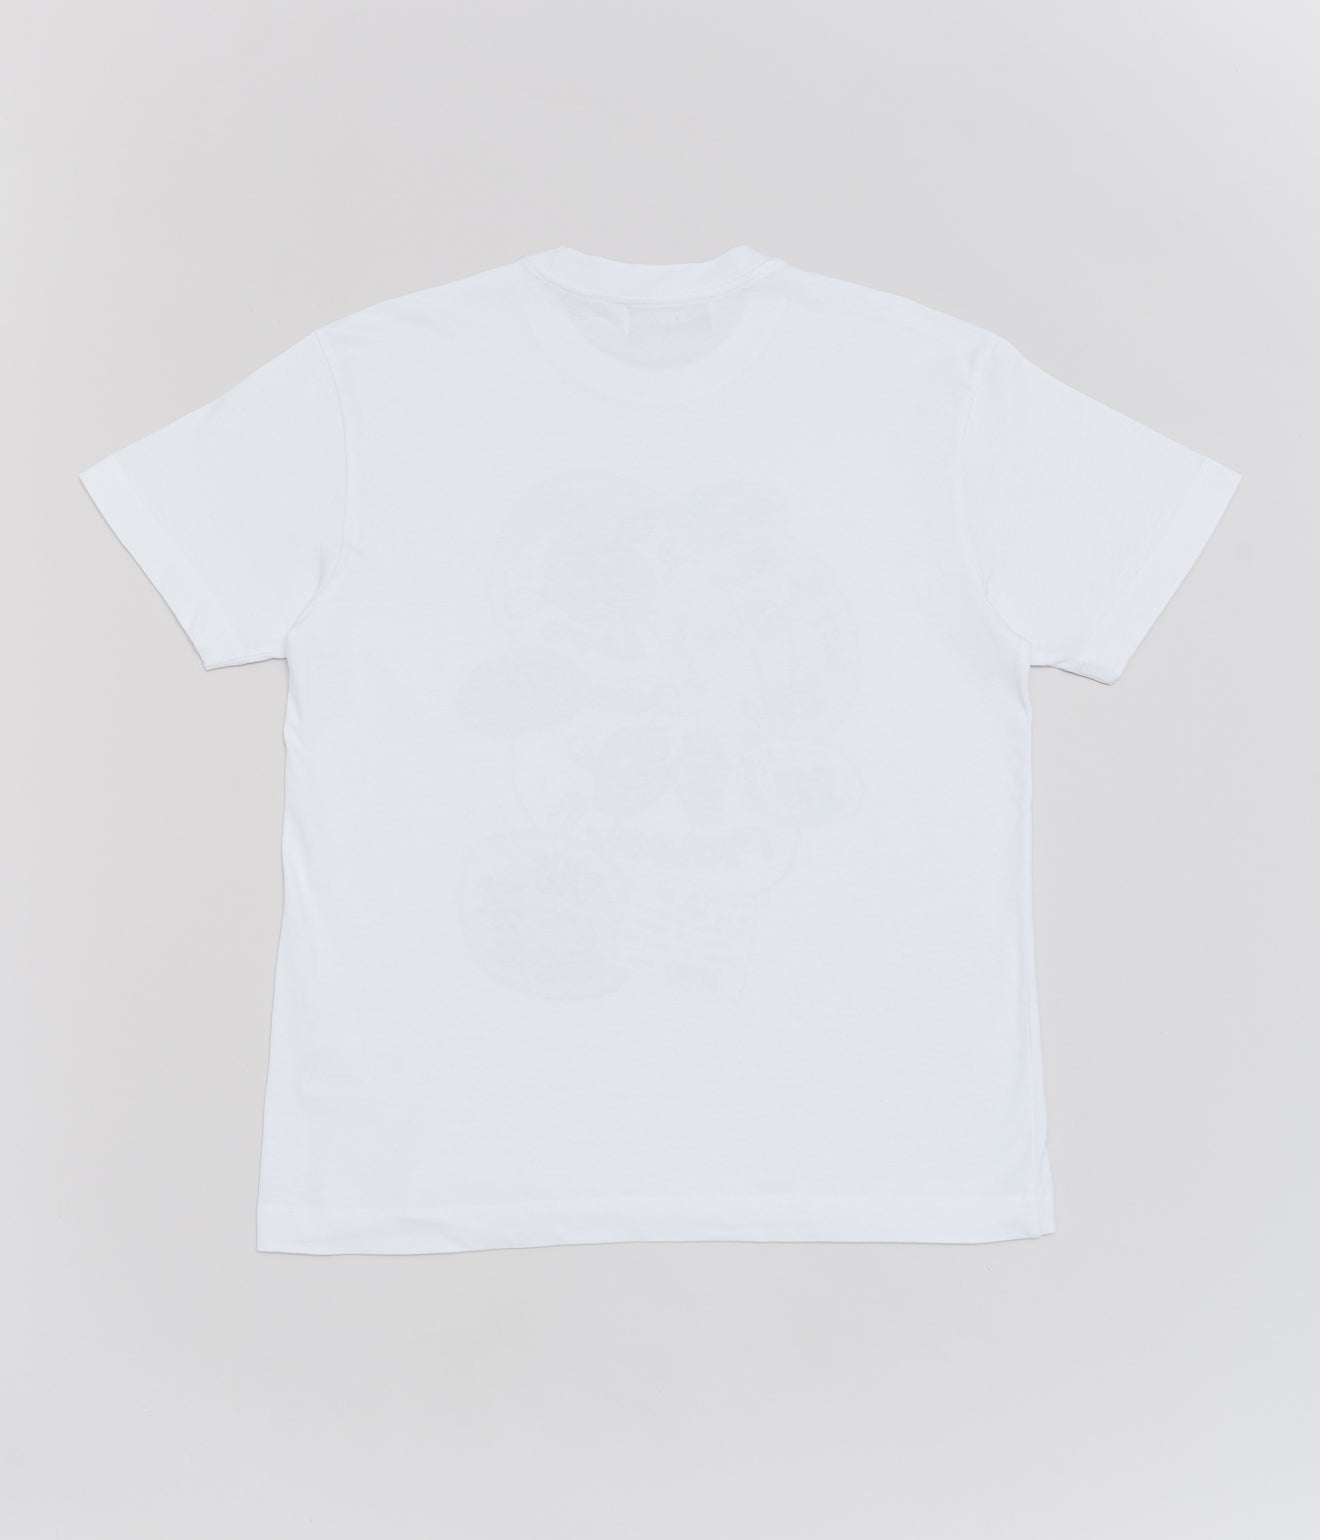 VVV "Etiquettes S/S T-shirt" - WEAREALLANIMALS